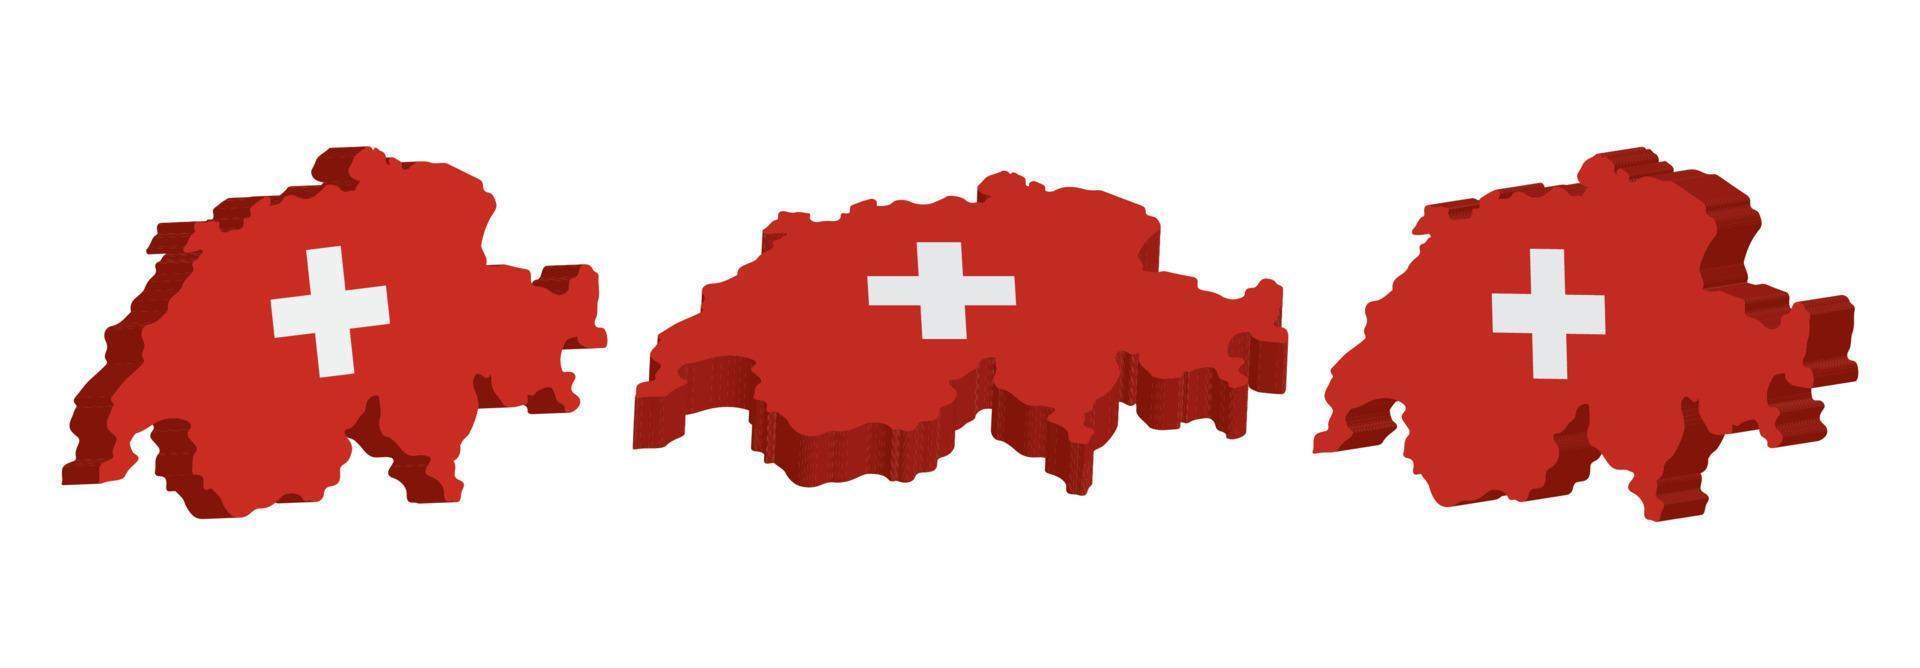 réaliste 3d carte de Suisse vecteur conception modèle